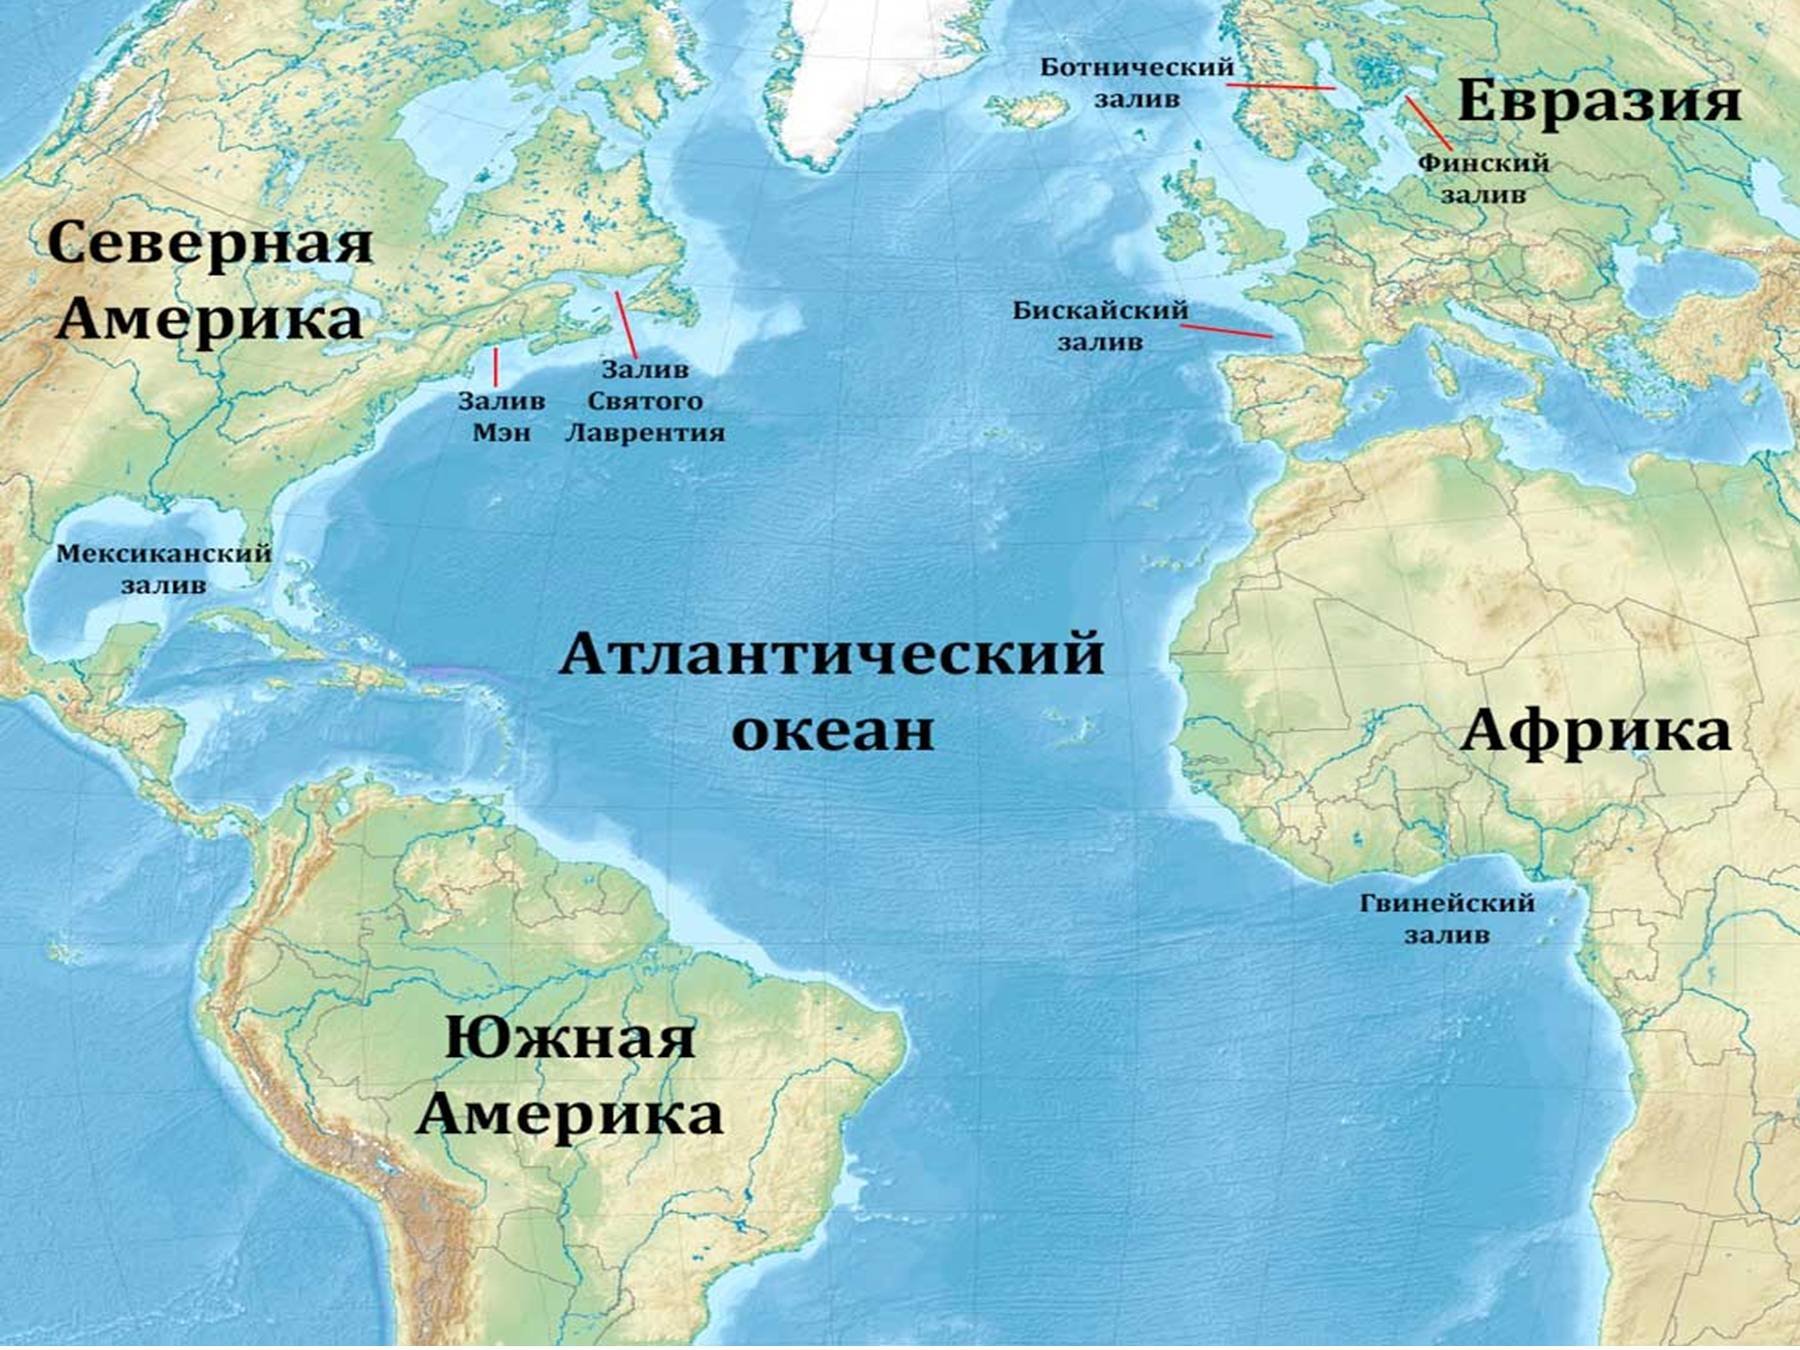 Путешественник атлантического океана. Расположение Атлантического океана на карте. Карта Атлантического океана с морями заливами и проливами. Атлантический океан на карте. Атлантическийокеант на карт.